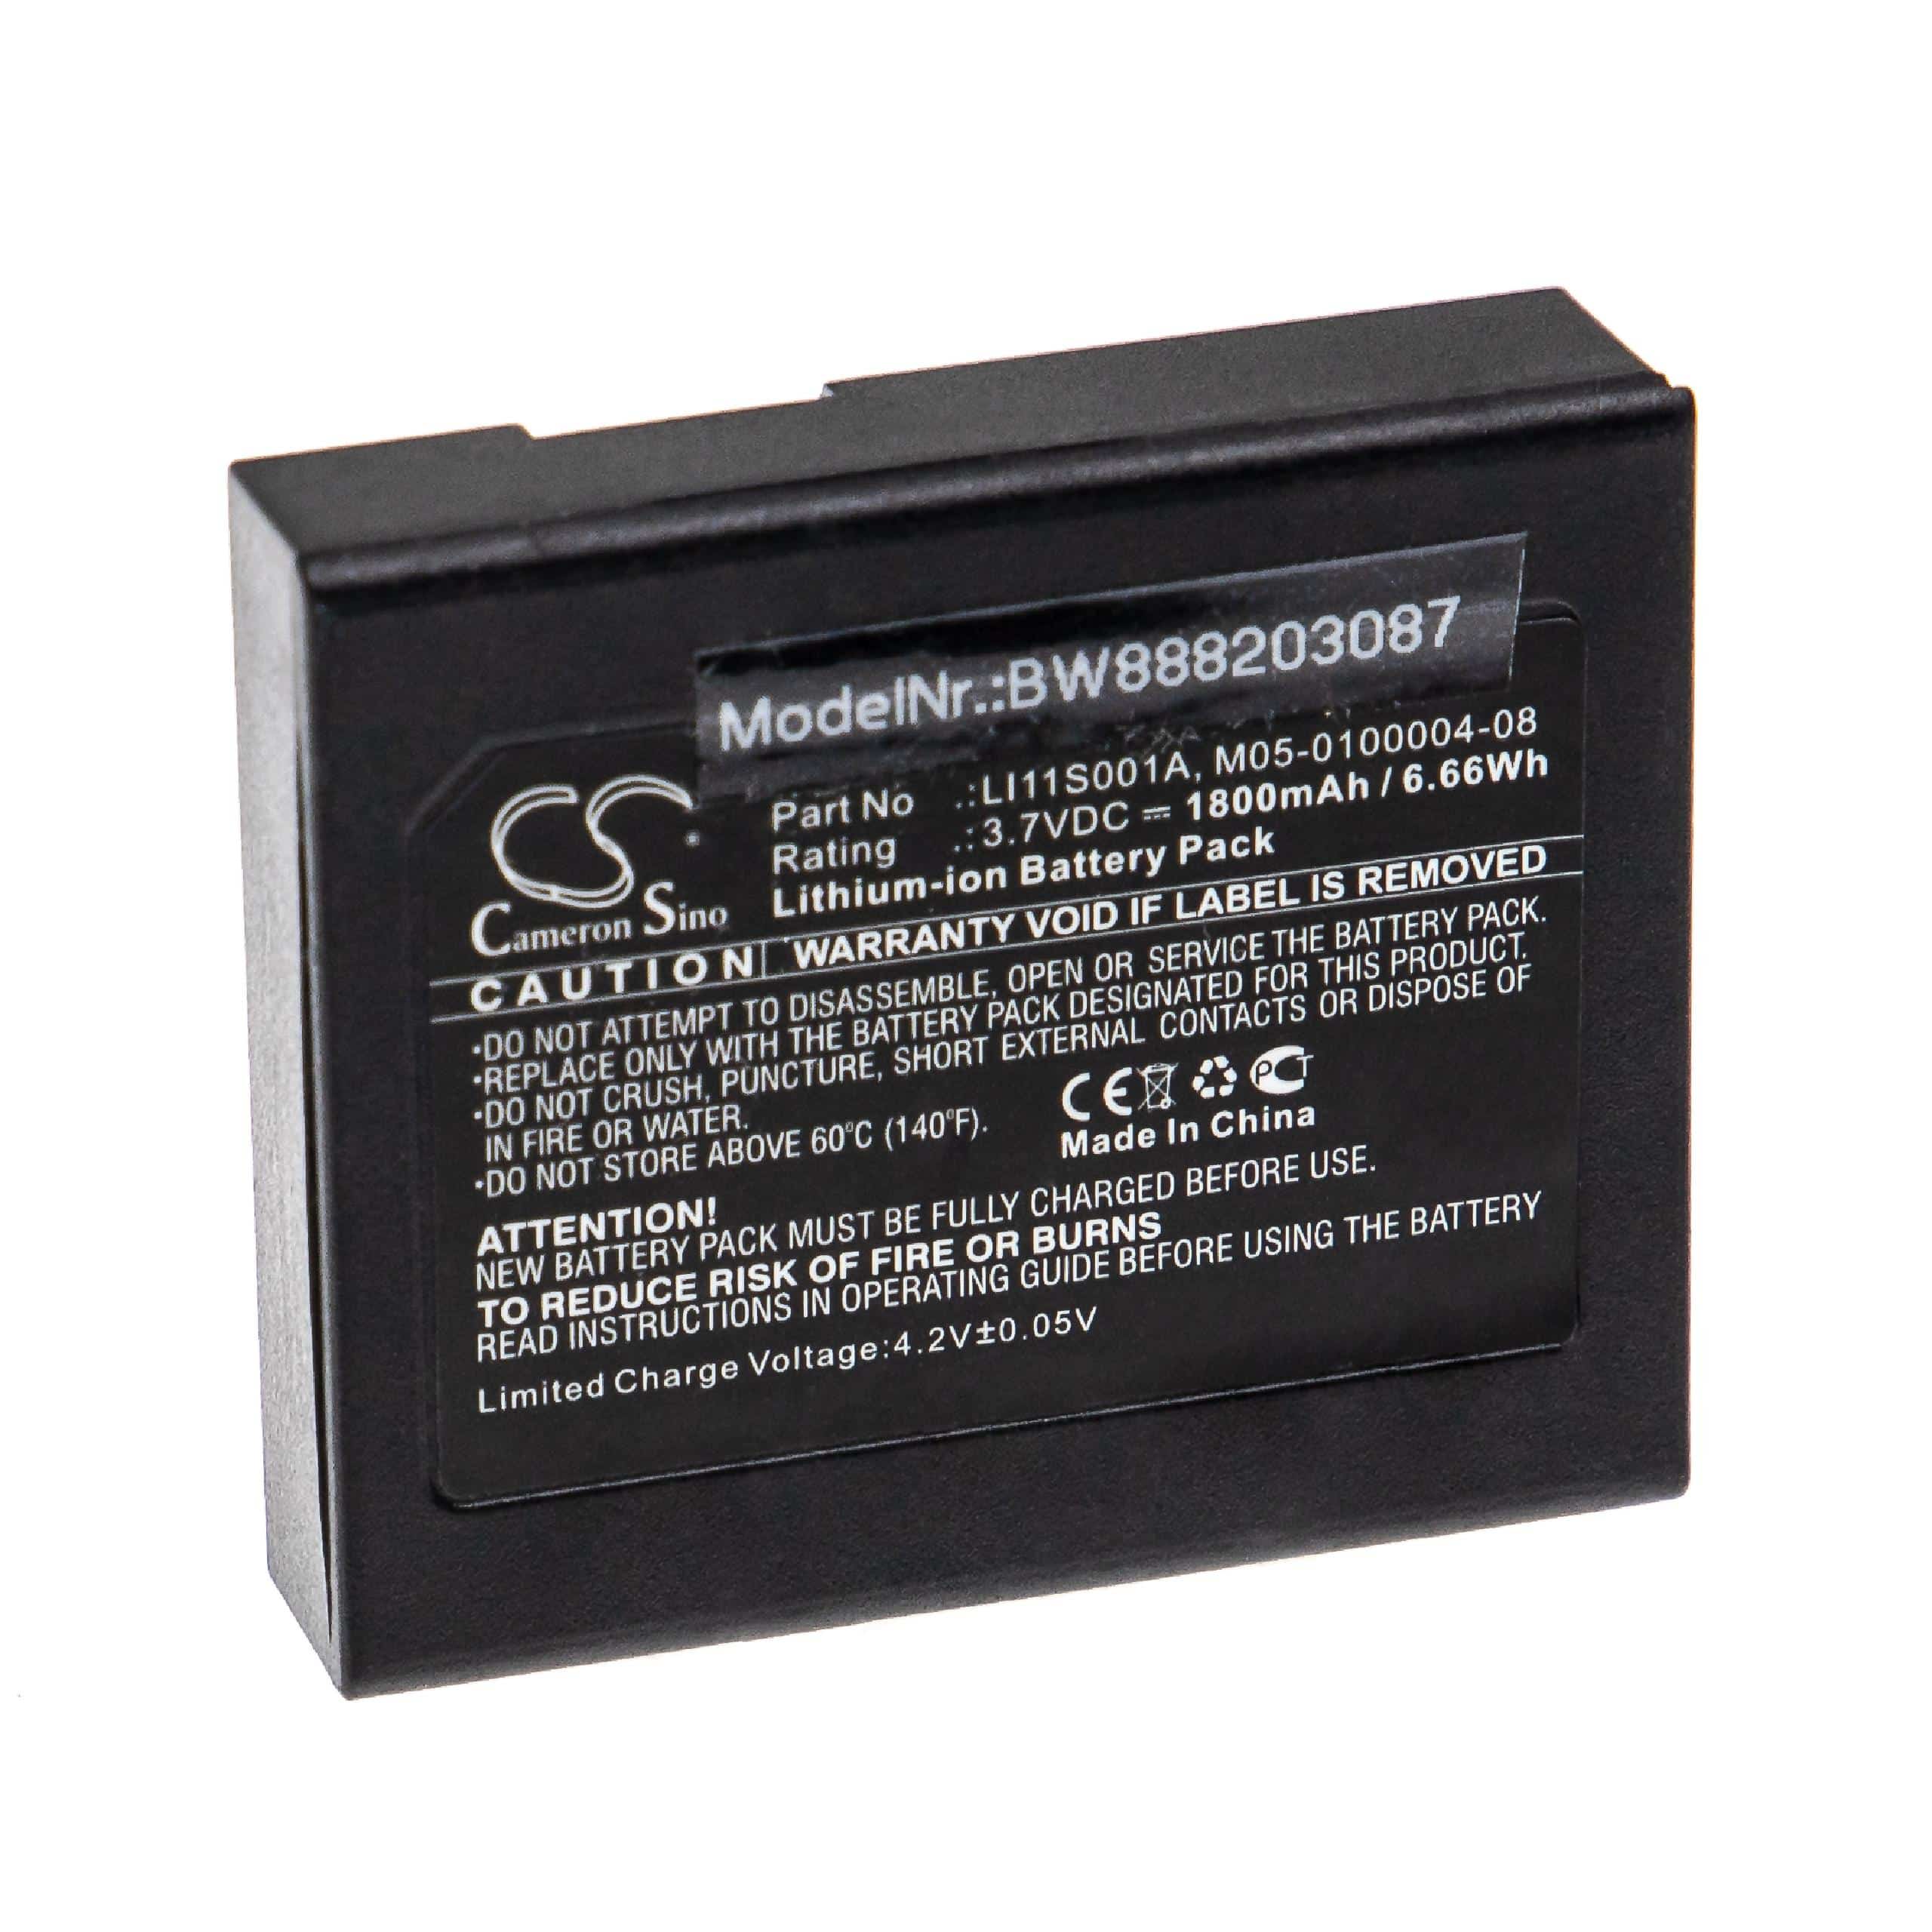 Batterie remplace Mindray 022-000008-00, M05-0100004-08, LI11S001A pour appareil médical - 1800mAh 3,7V Li-ion